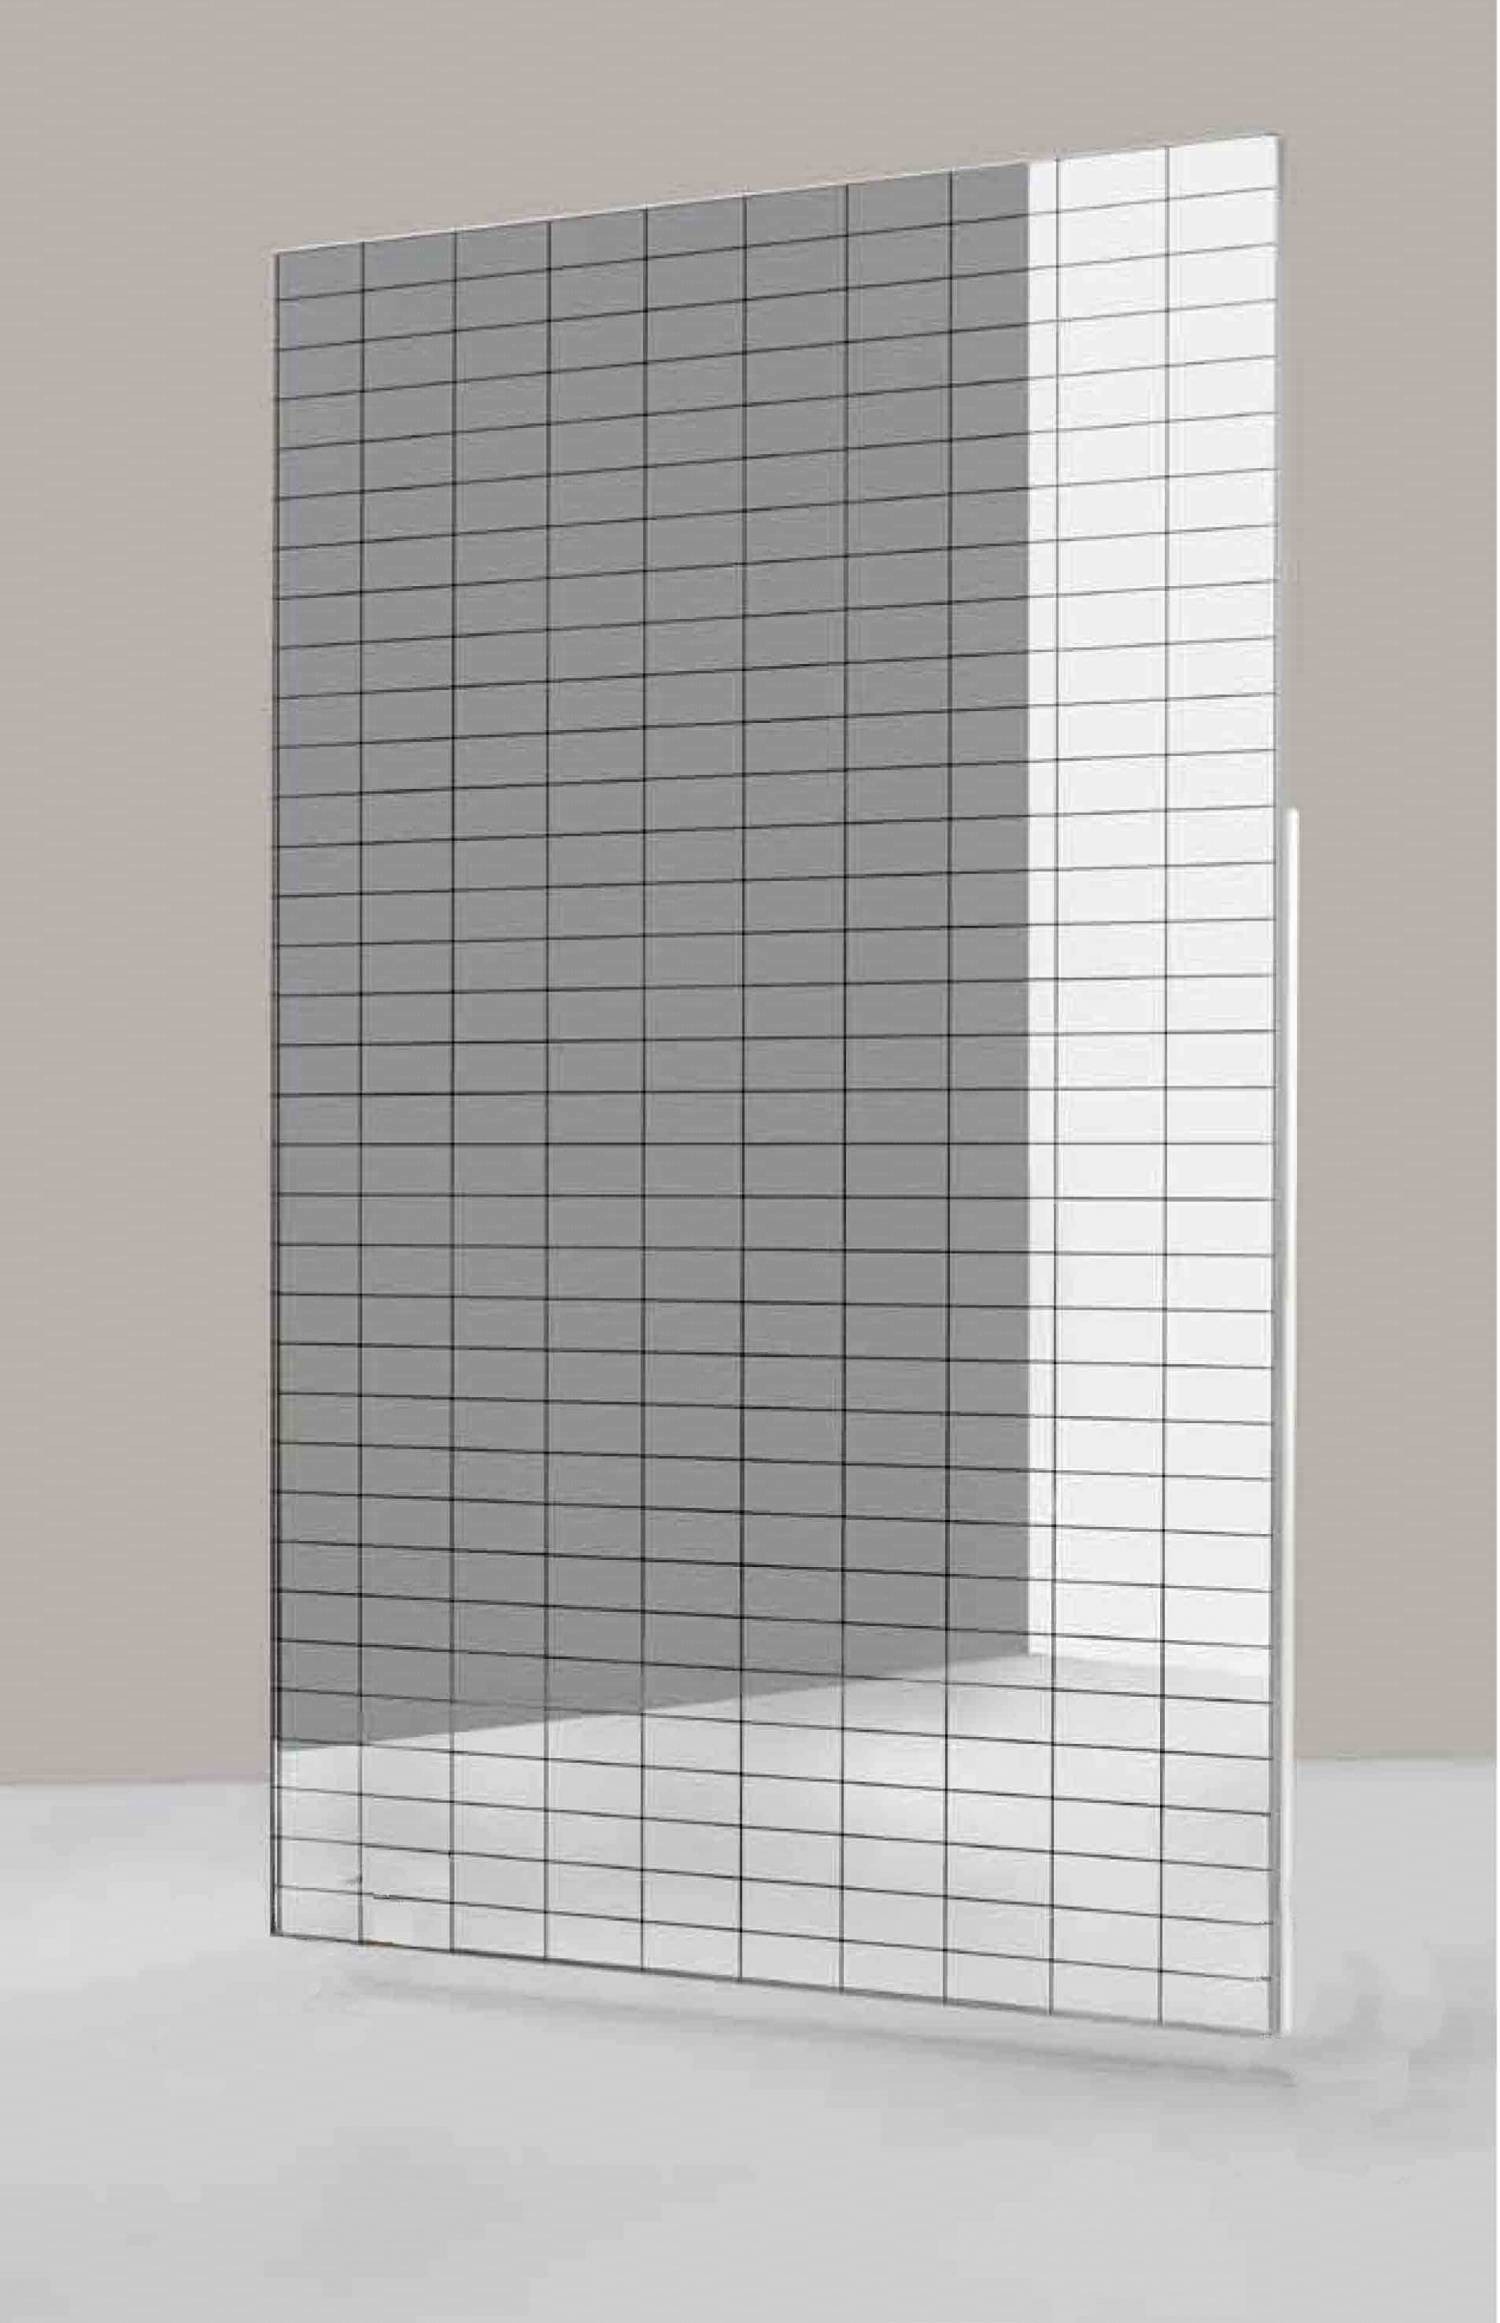 Specchio antinfortunistico modulare quadrettato, dimensione cm. 100x200h